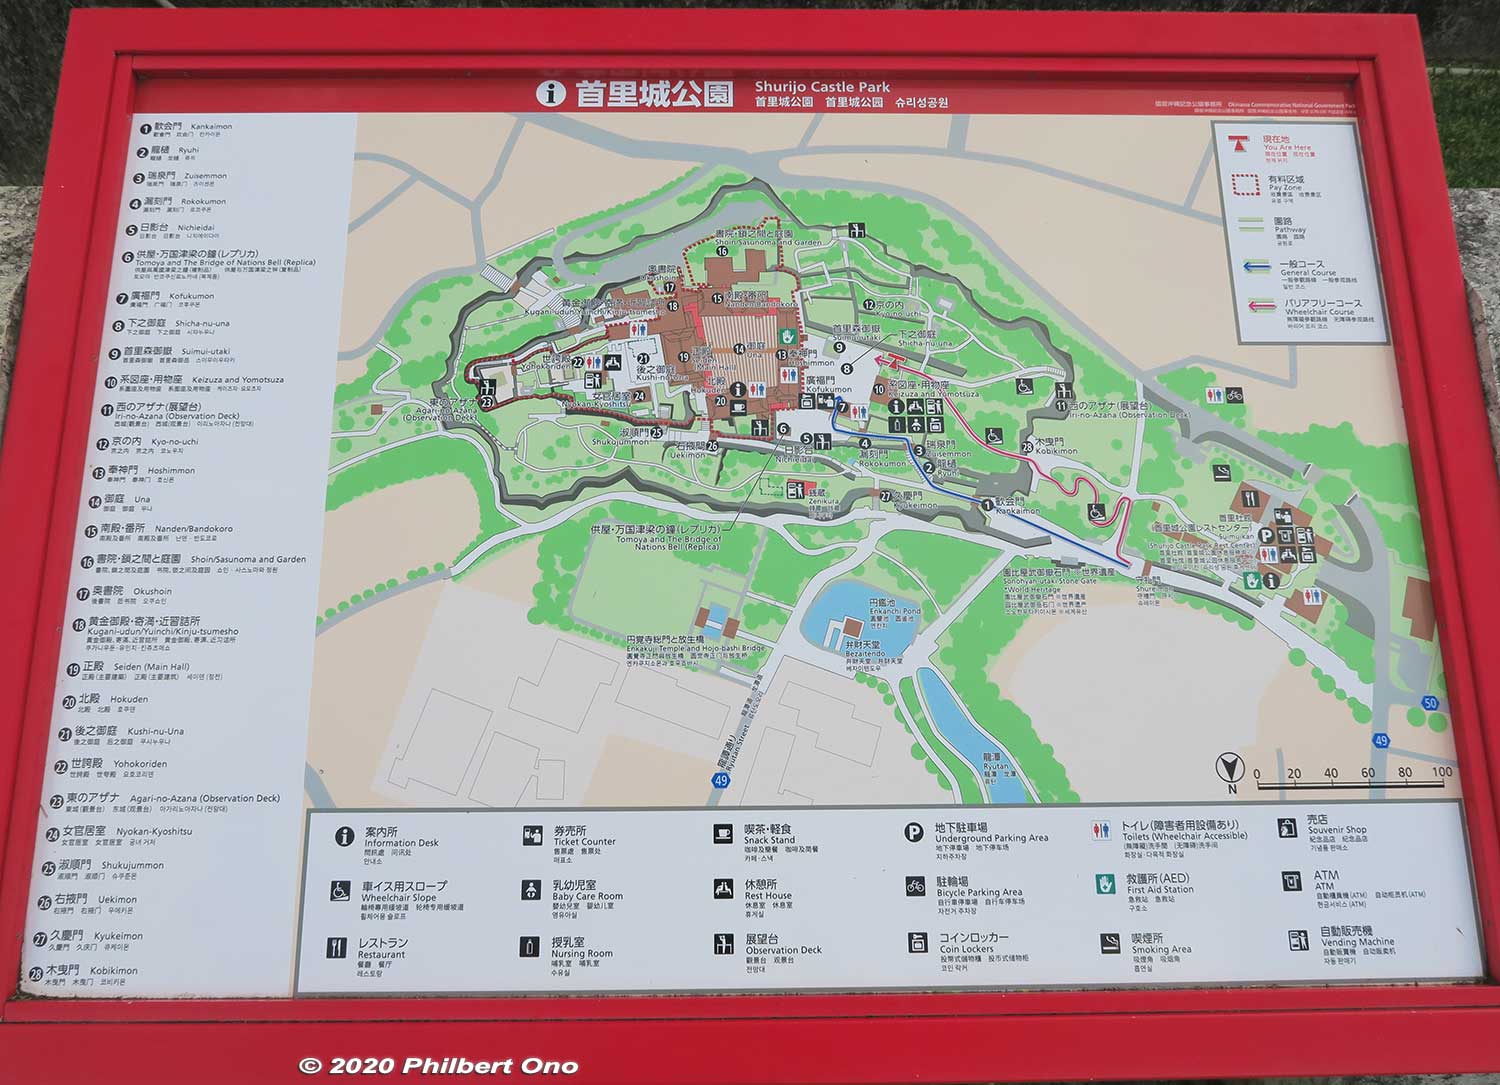 Map of Shurijo Castle Park.
Keywords: okinawa naha shuri shurijo castle gusuku